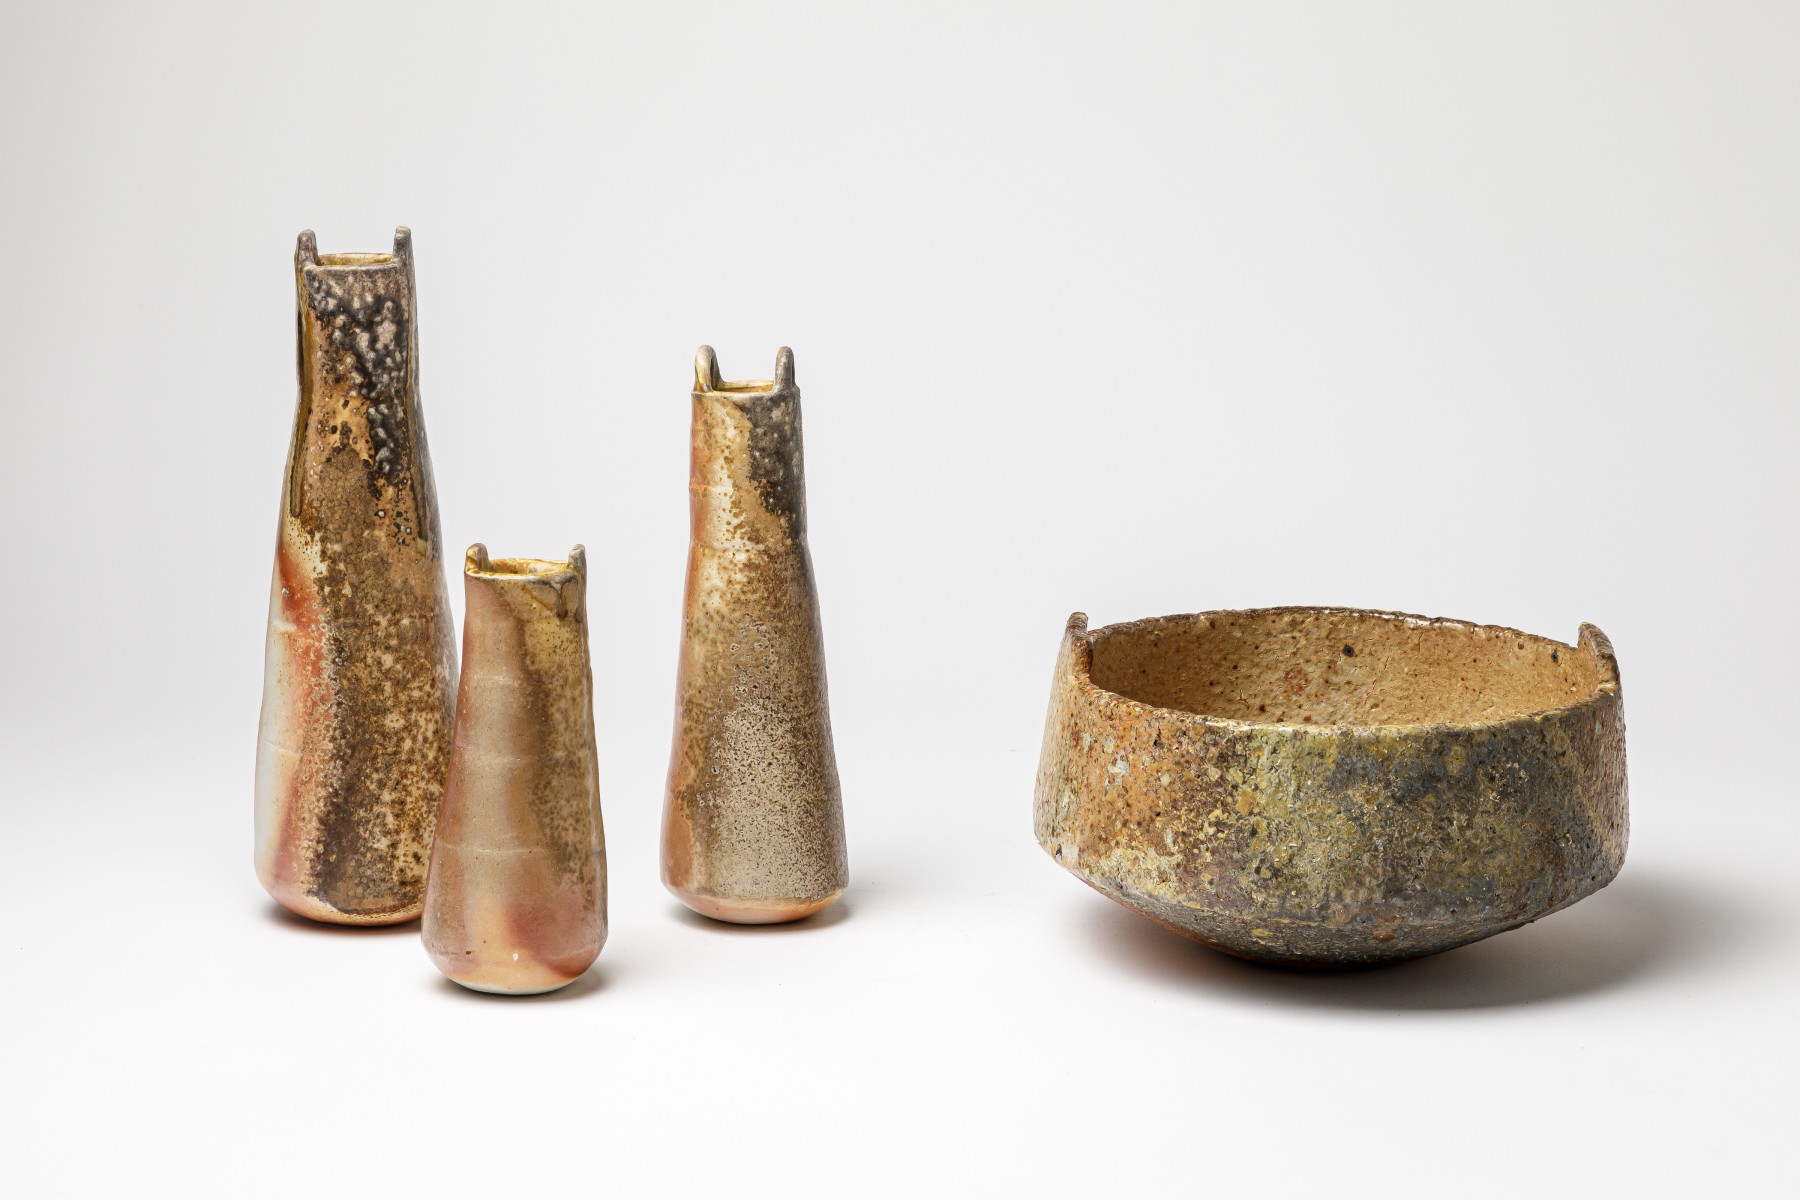 Totem porcelaine, pot, forme primitive, Marie David Géhin, La Borne, Céramique, Cuisson bois, Anagama